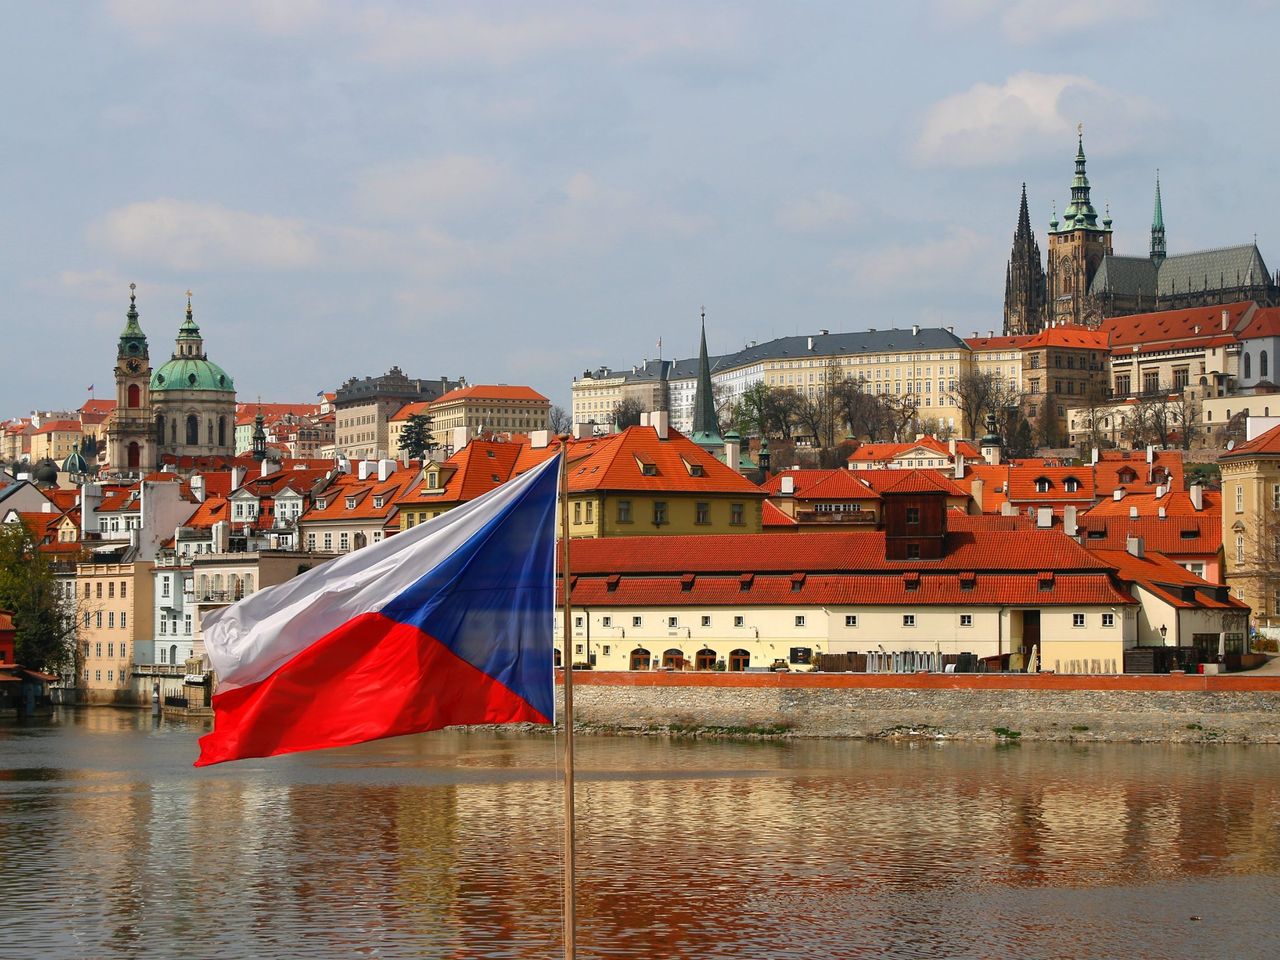 Групповая прогулка в Праге | Цена 32€, отзывы, описание экскурсии